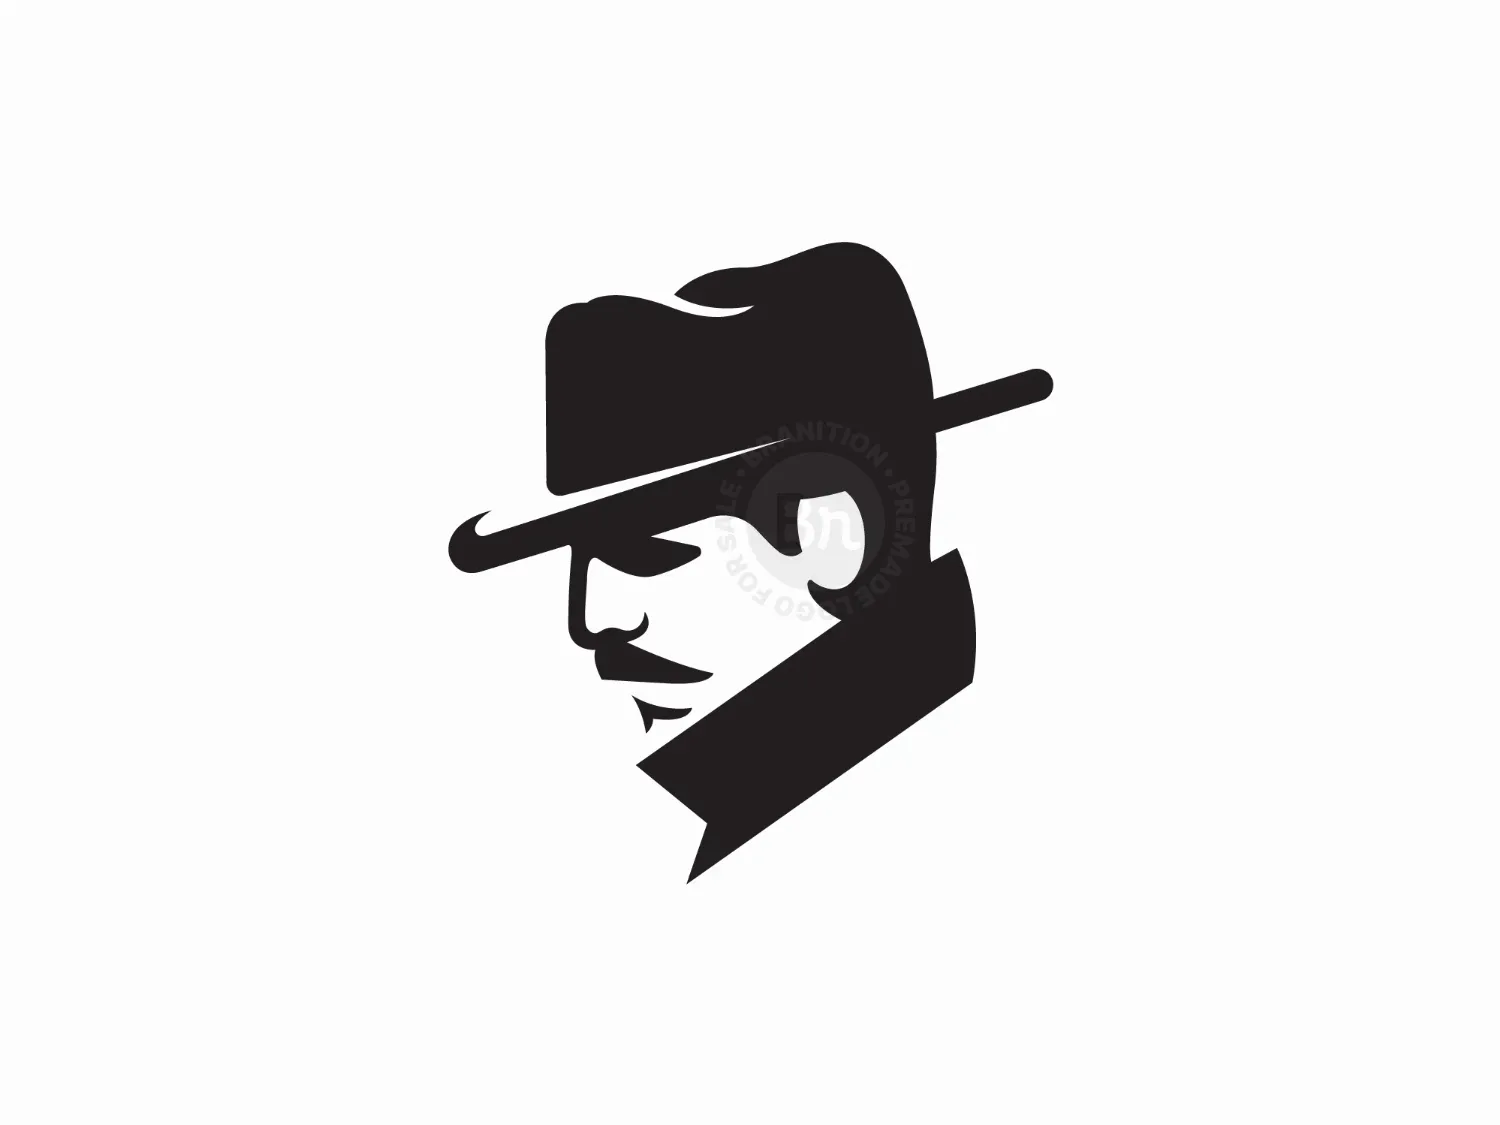 Detective Logo